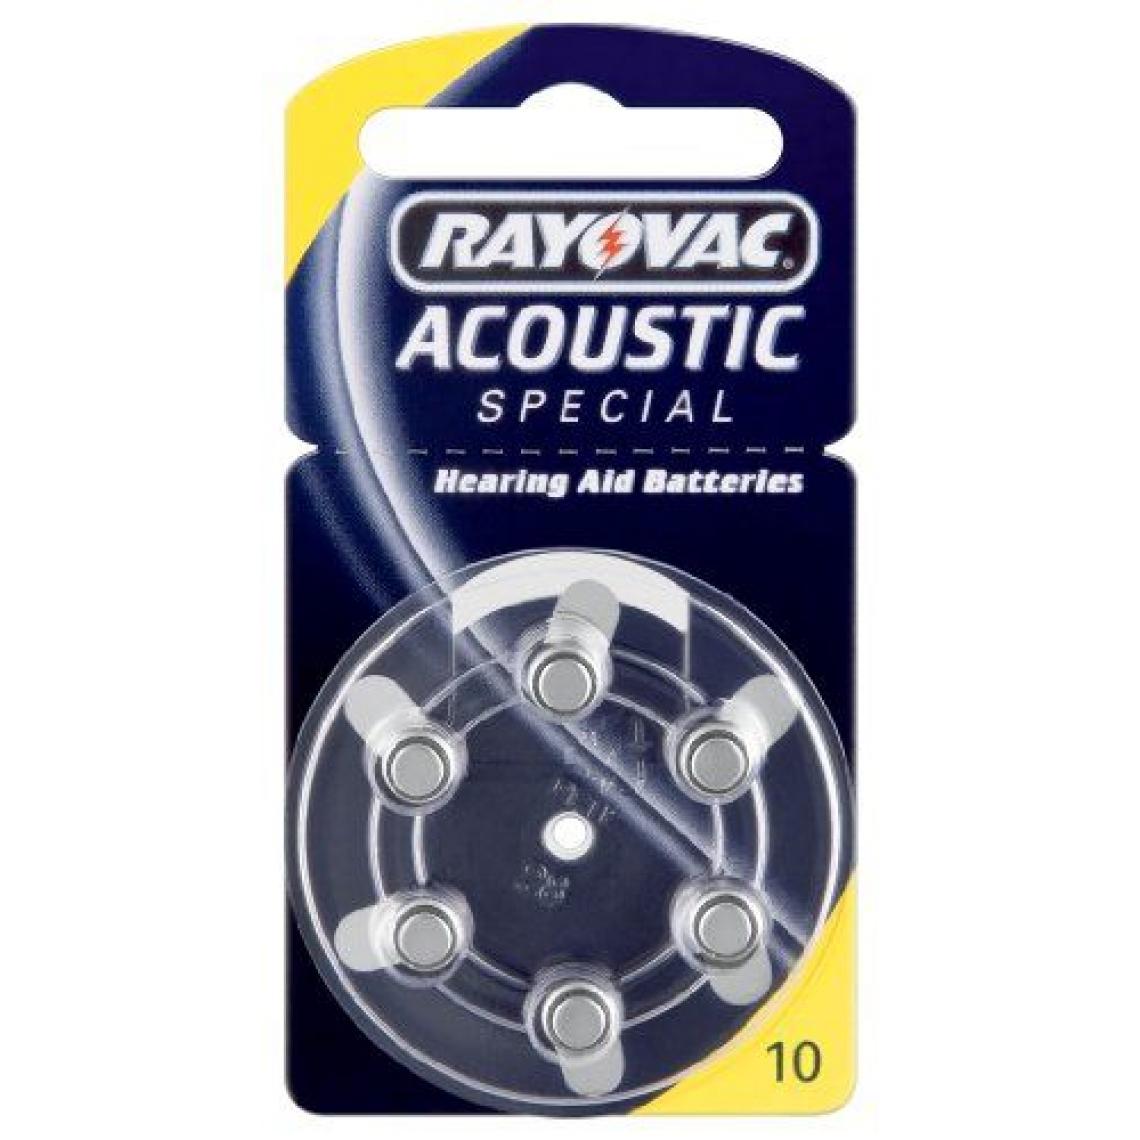 Rayovac - Rayovac - 4610945416 - Pile Auditive Acoustic N°10 - Piles spécifiques